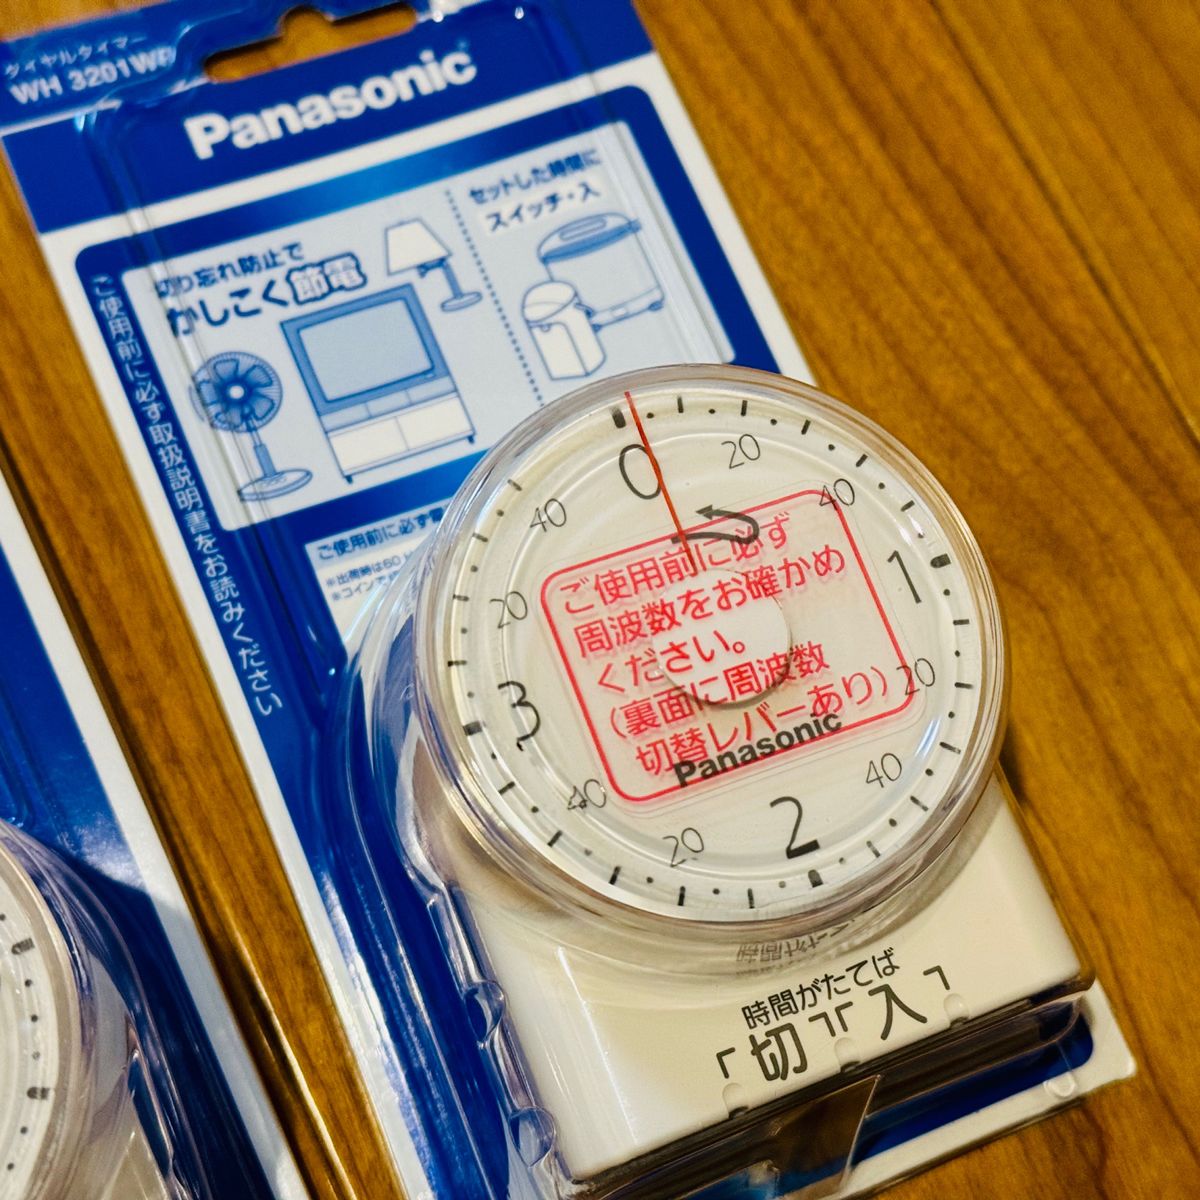 パナソニック(Panasonic) ダイヤルタイマー(3時間形) WH3201WP 2個セット